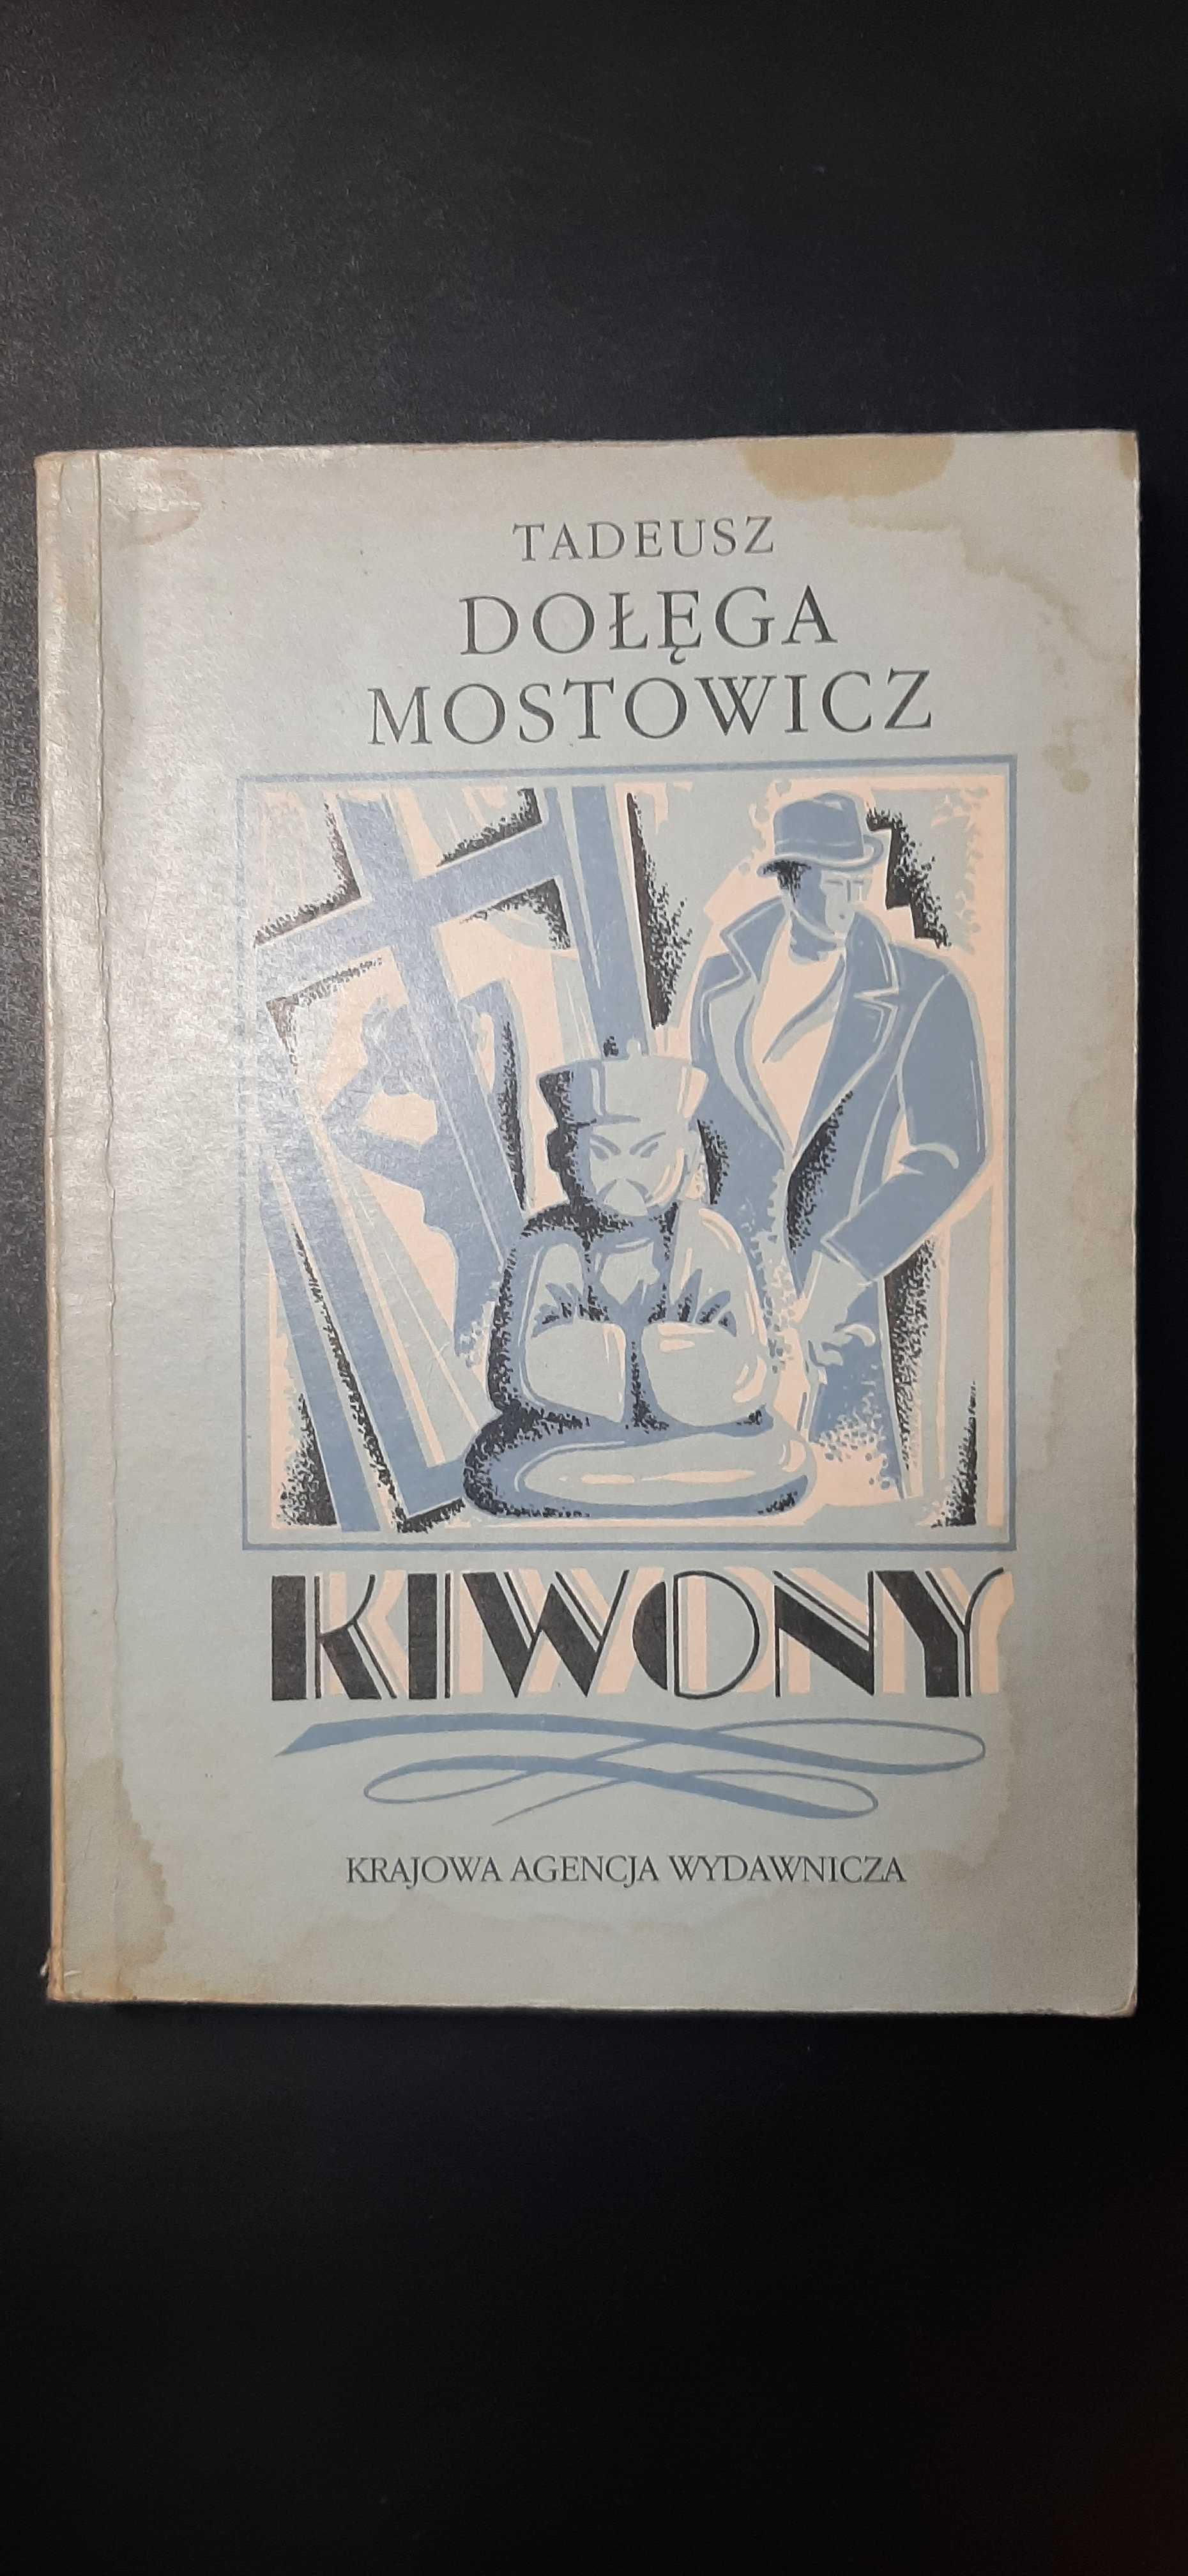 Kiwony Tadeusz Dołęga Mostowicz